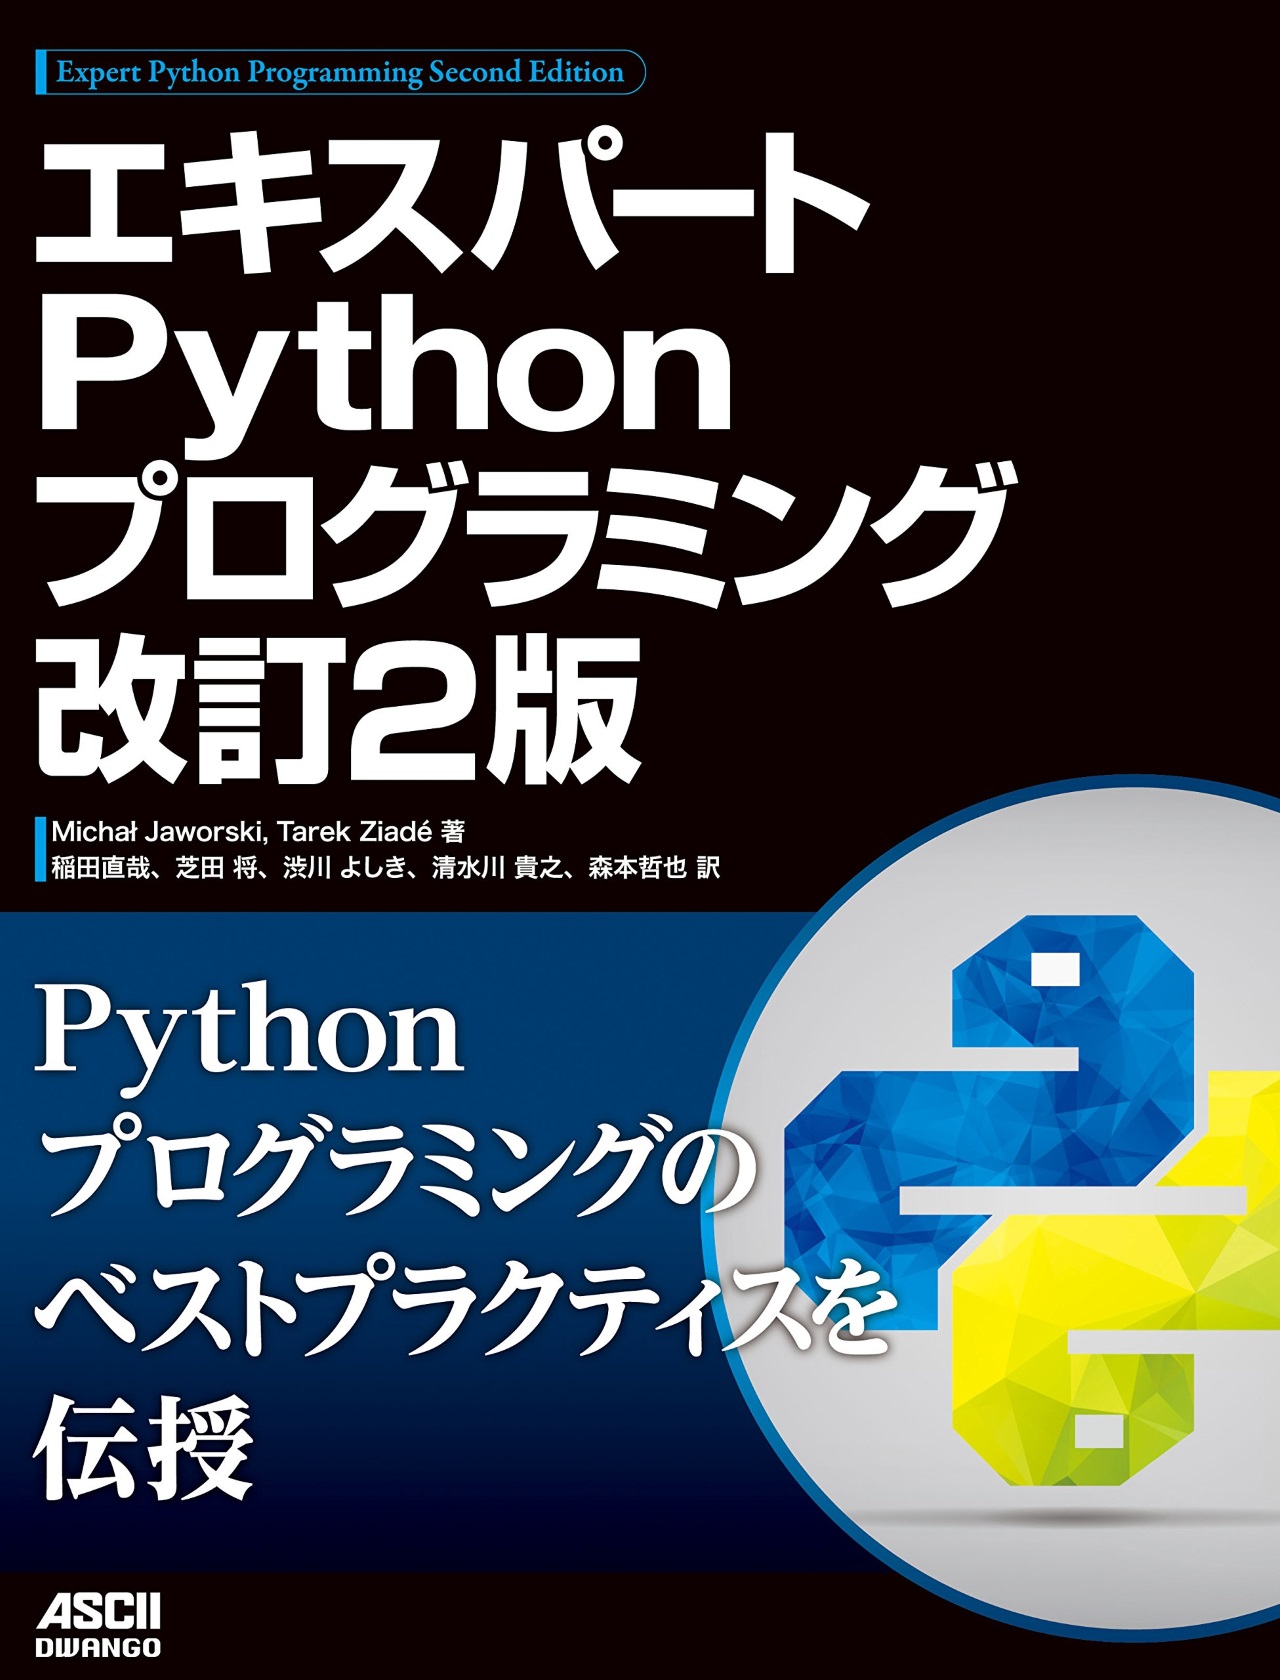 ../../_images/expert-python-programming-2nd-ja-cover.jpg